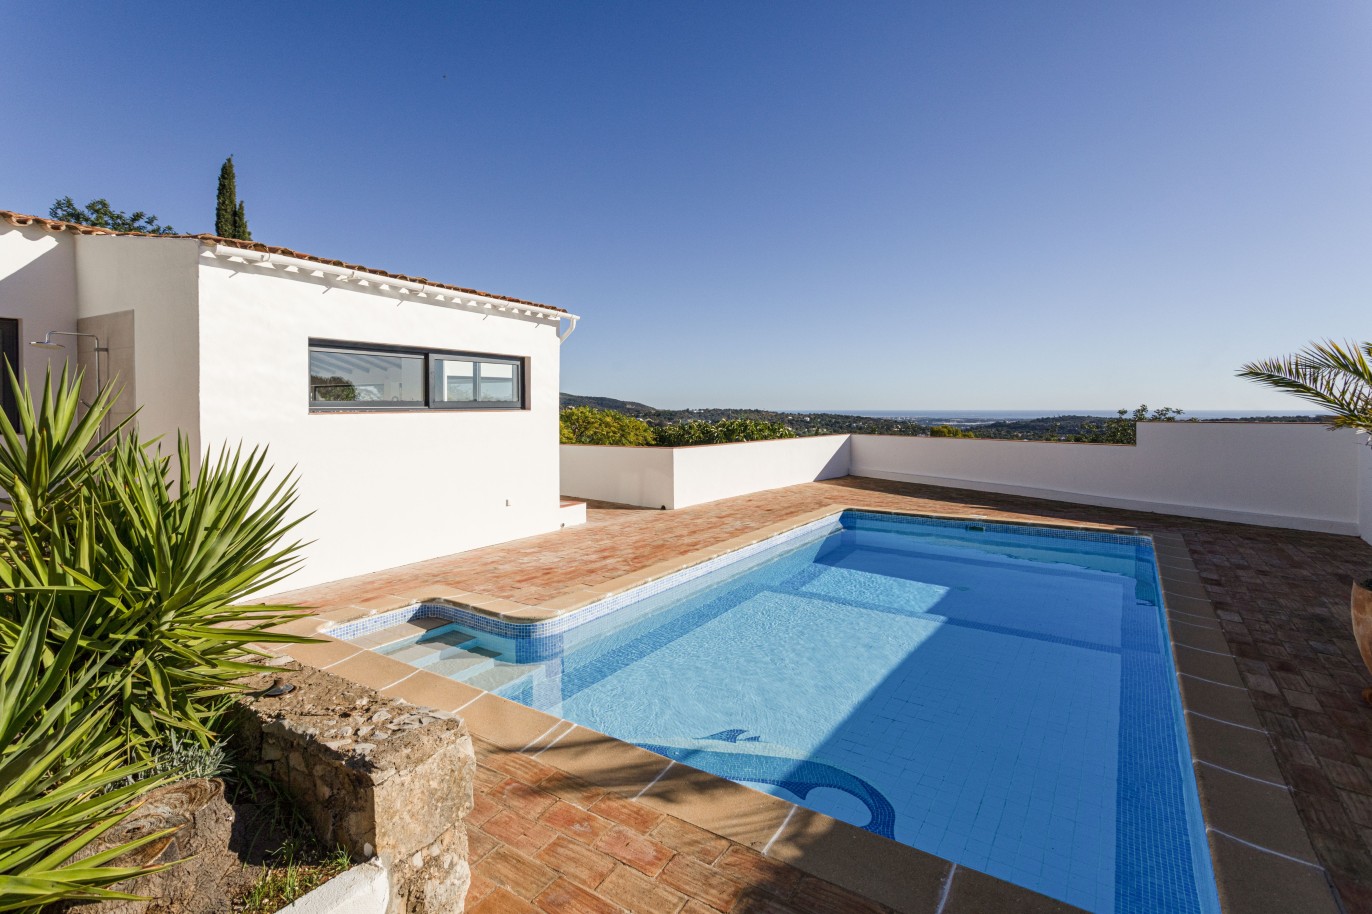 Moradia V3 com vista mar e piscina, para venda em Santa Barbara, Algarve_246328